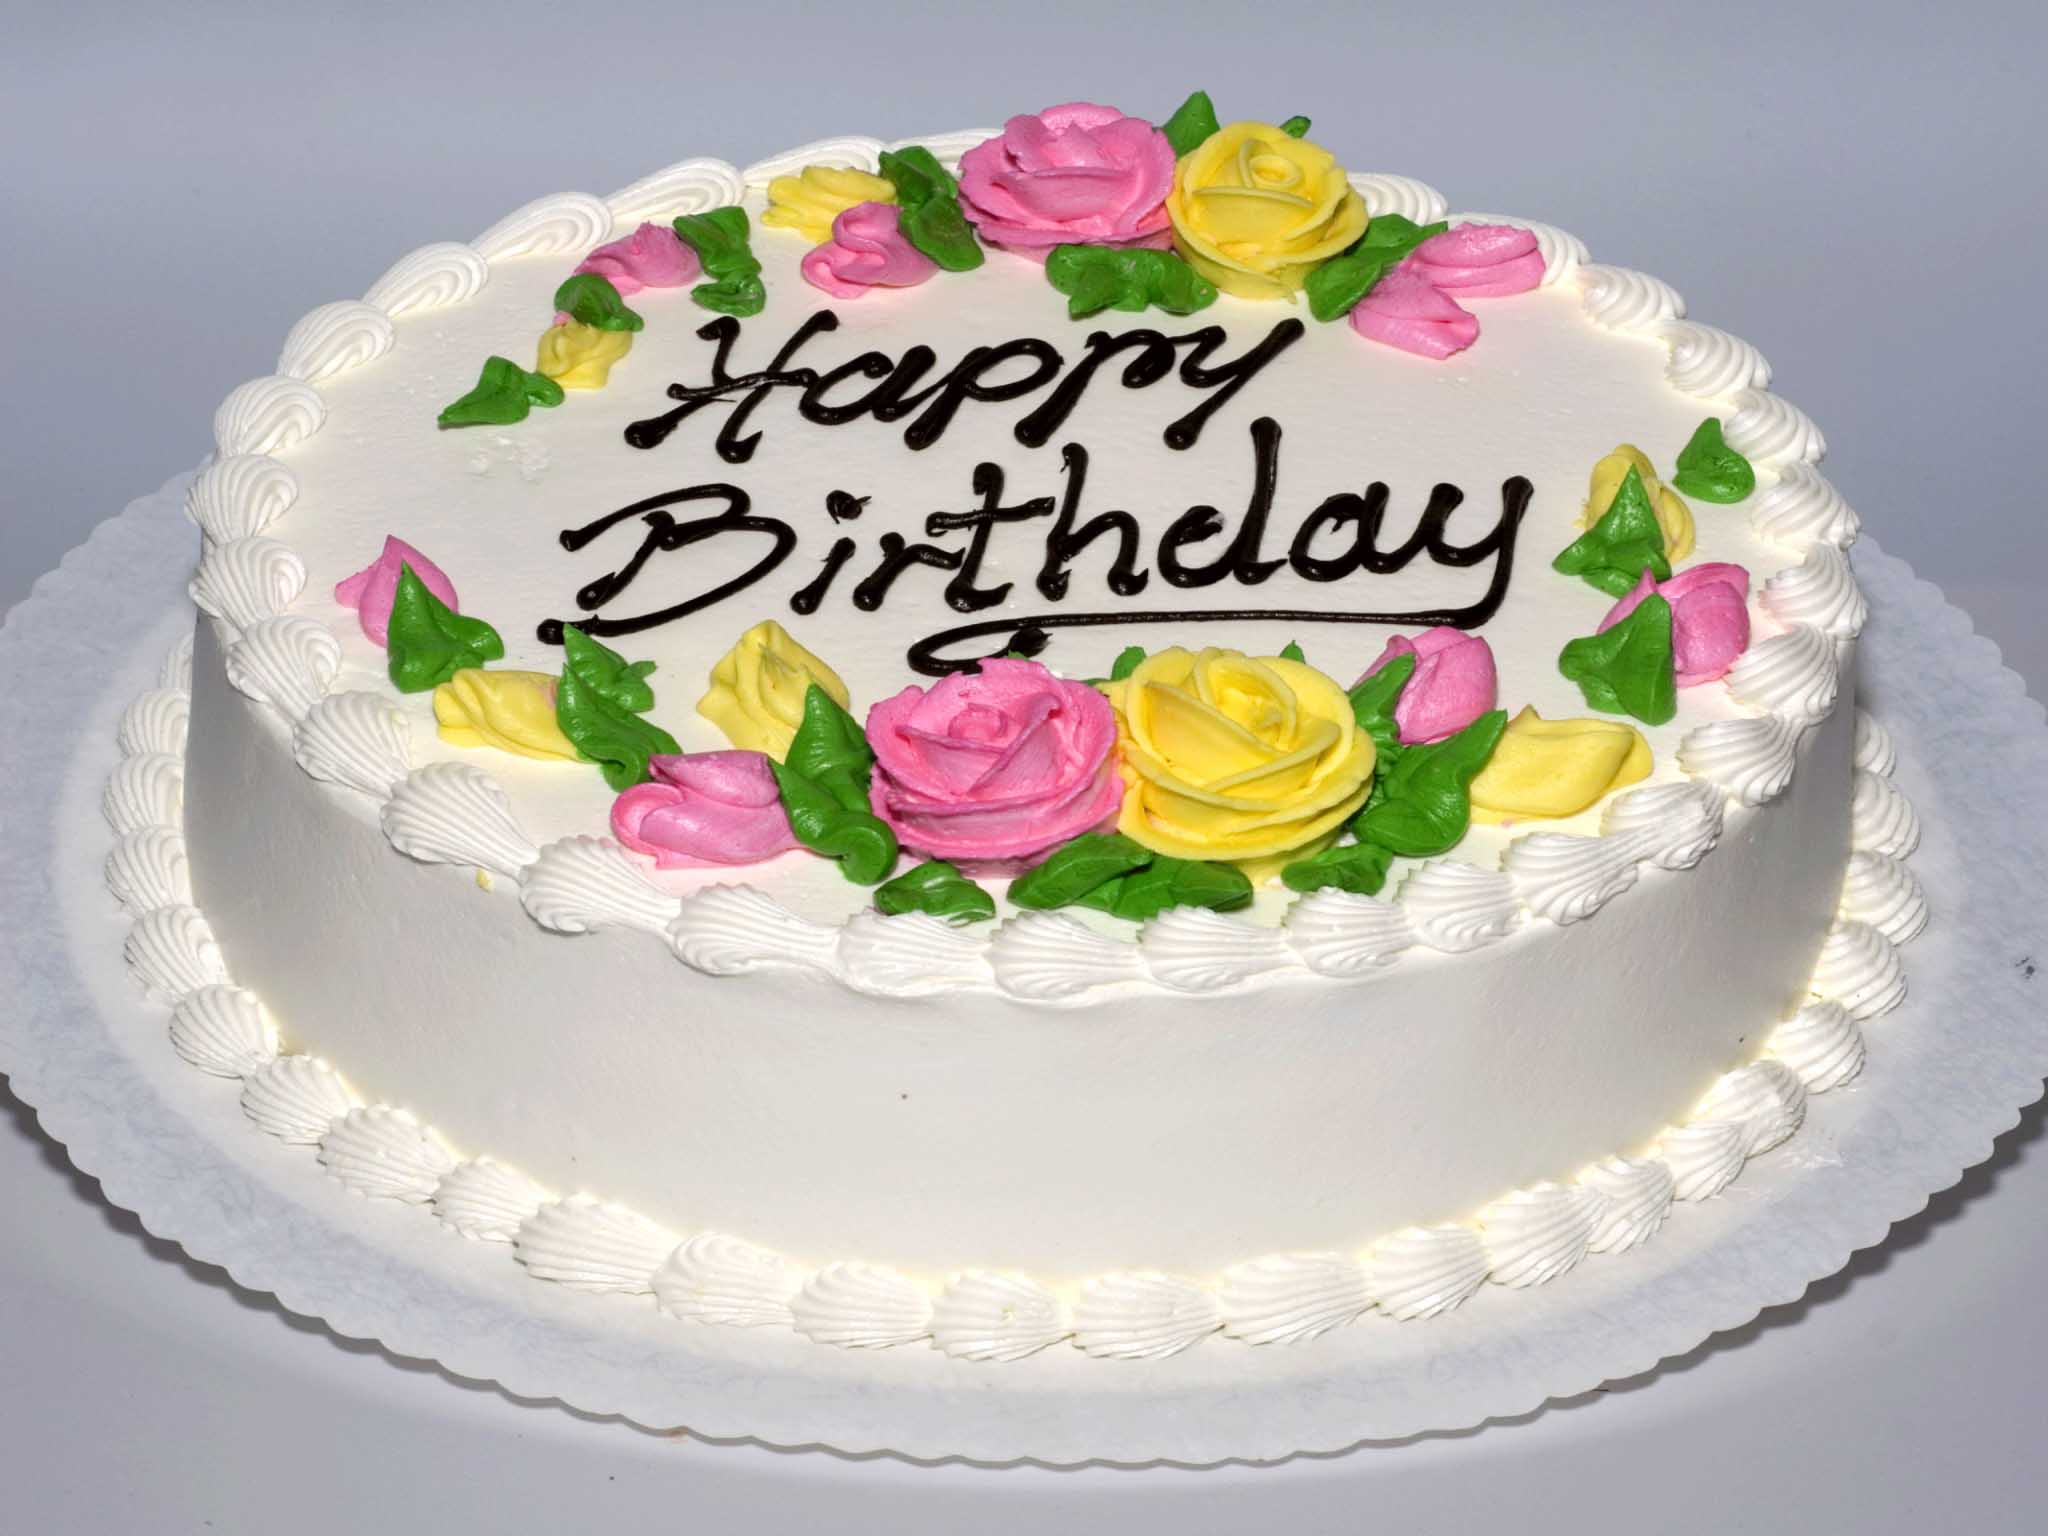 Happy birthday cake pictures - Birthday cake pics